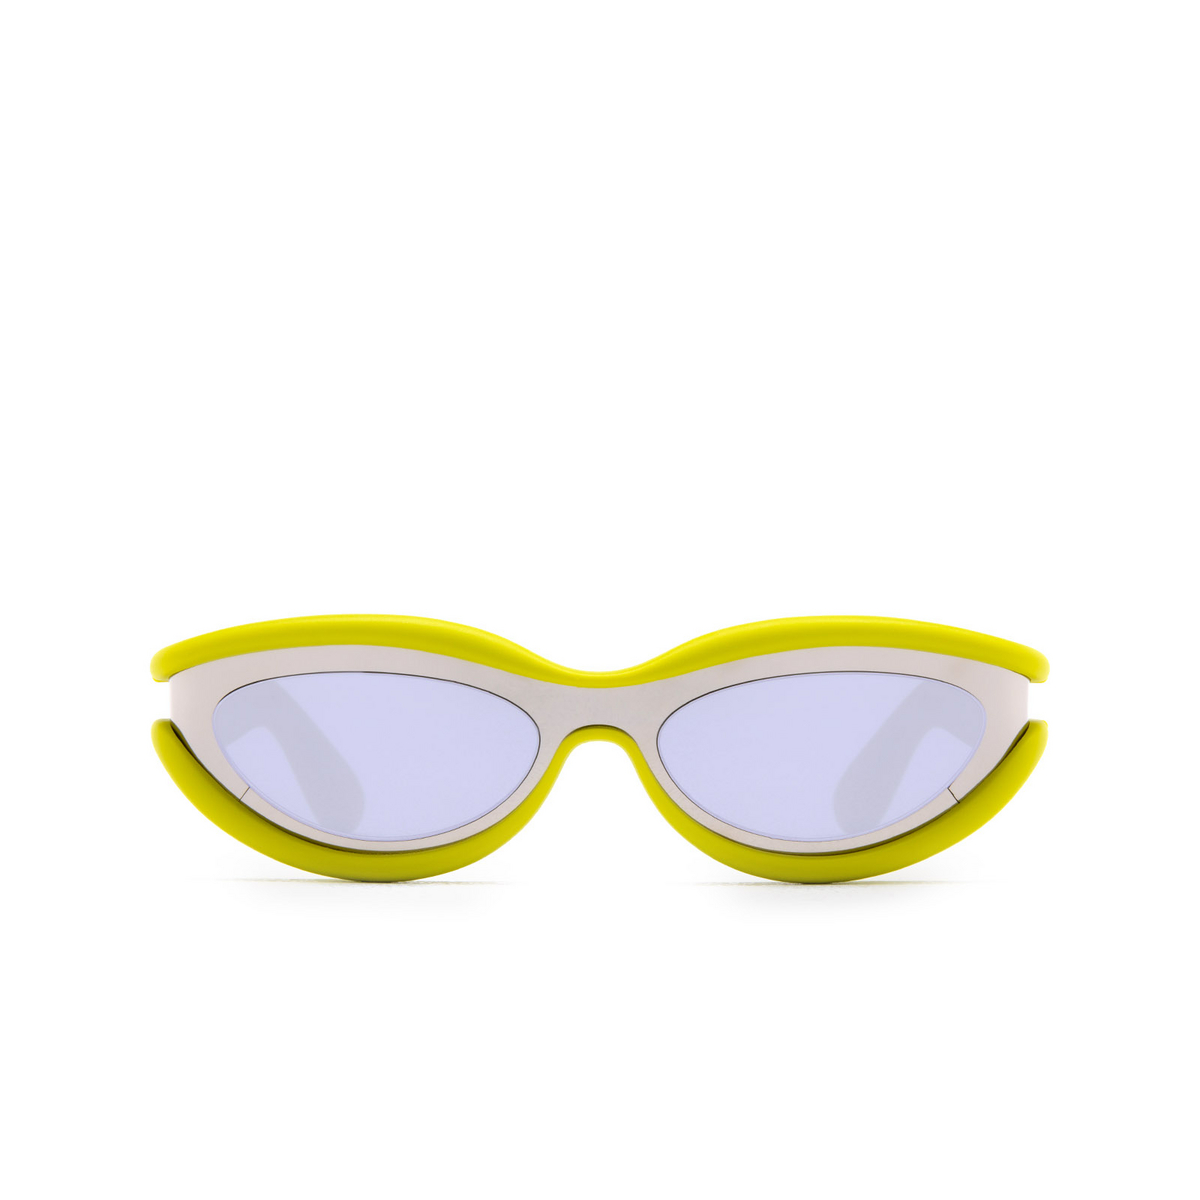 Bottega Veneta Hem Sunglasses 001 Silver - front view